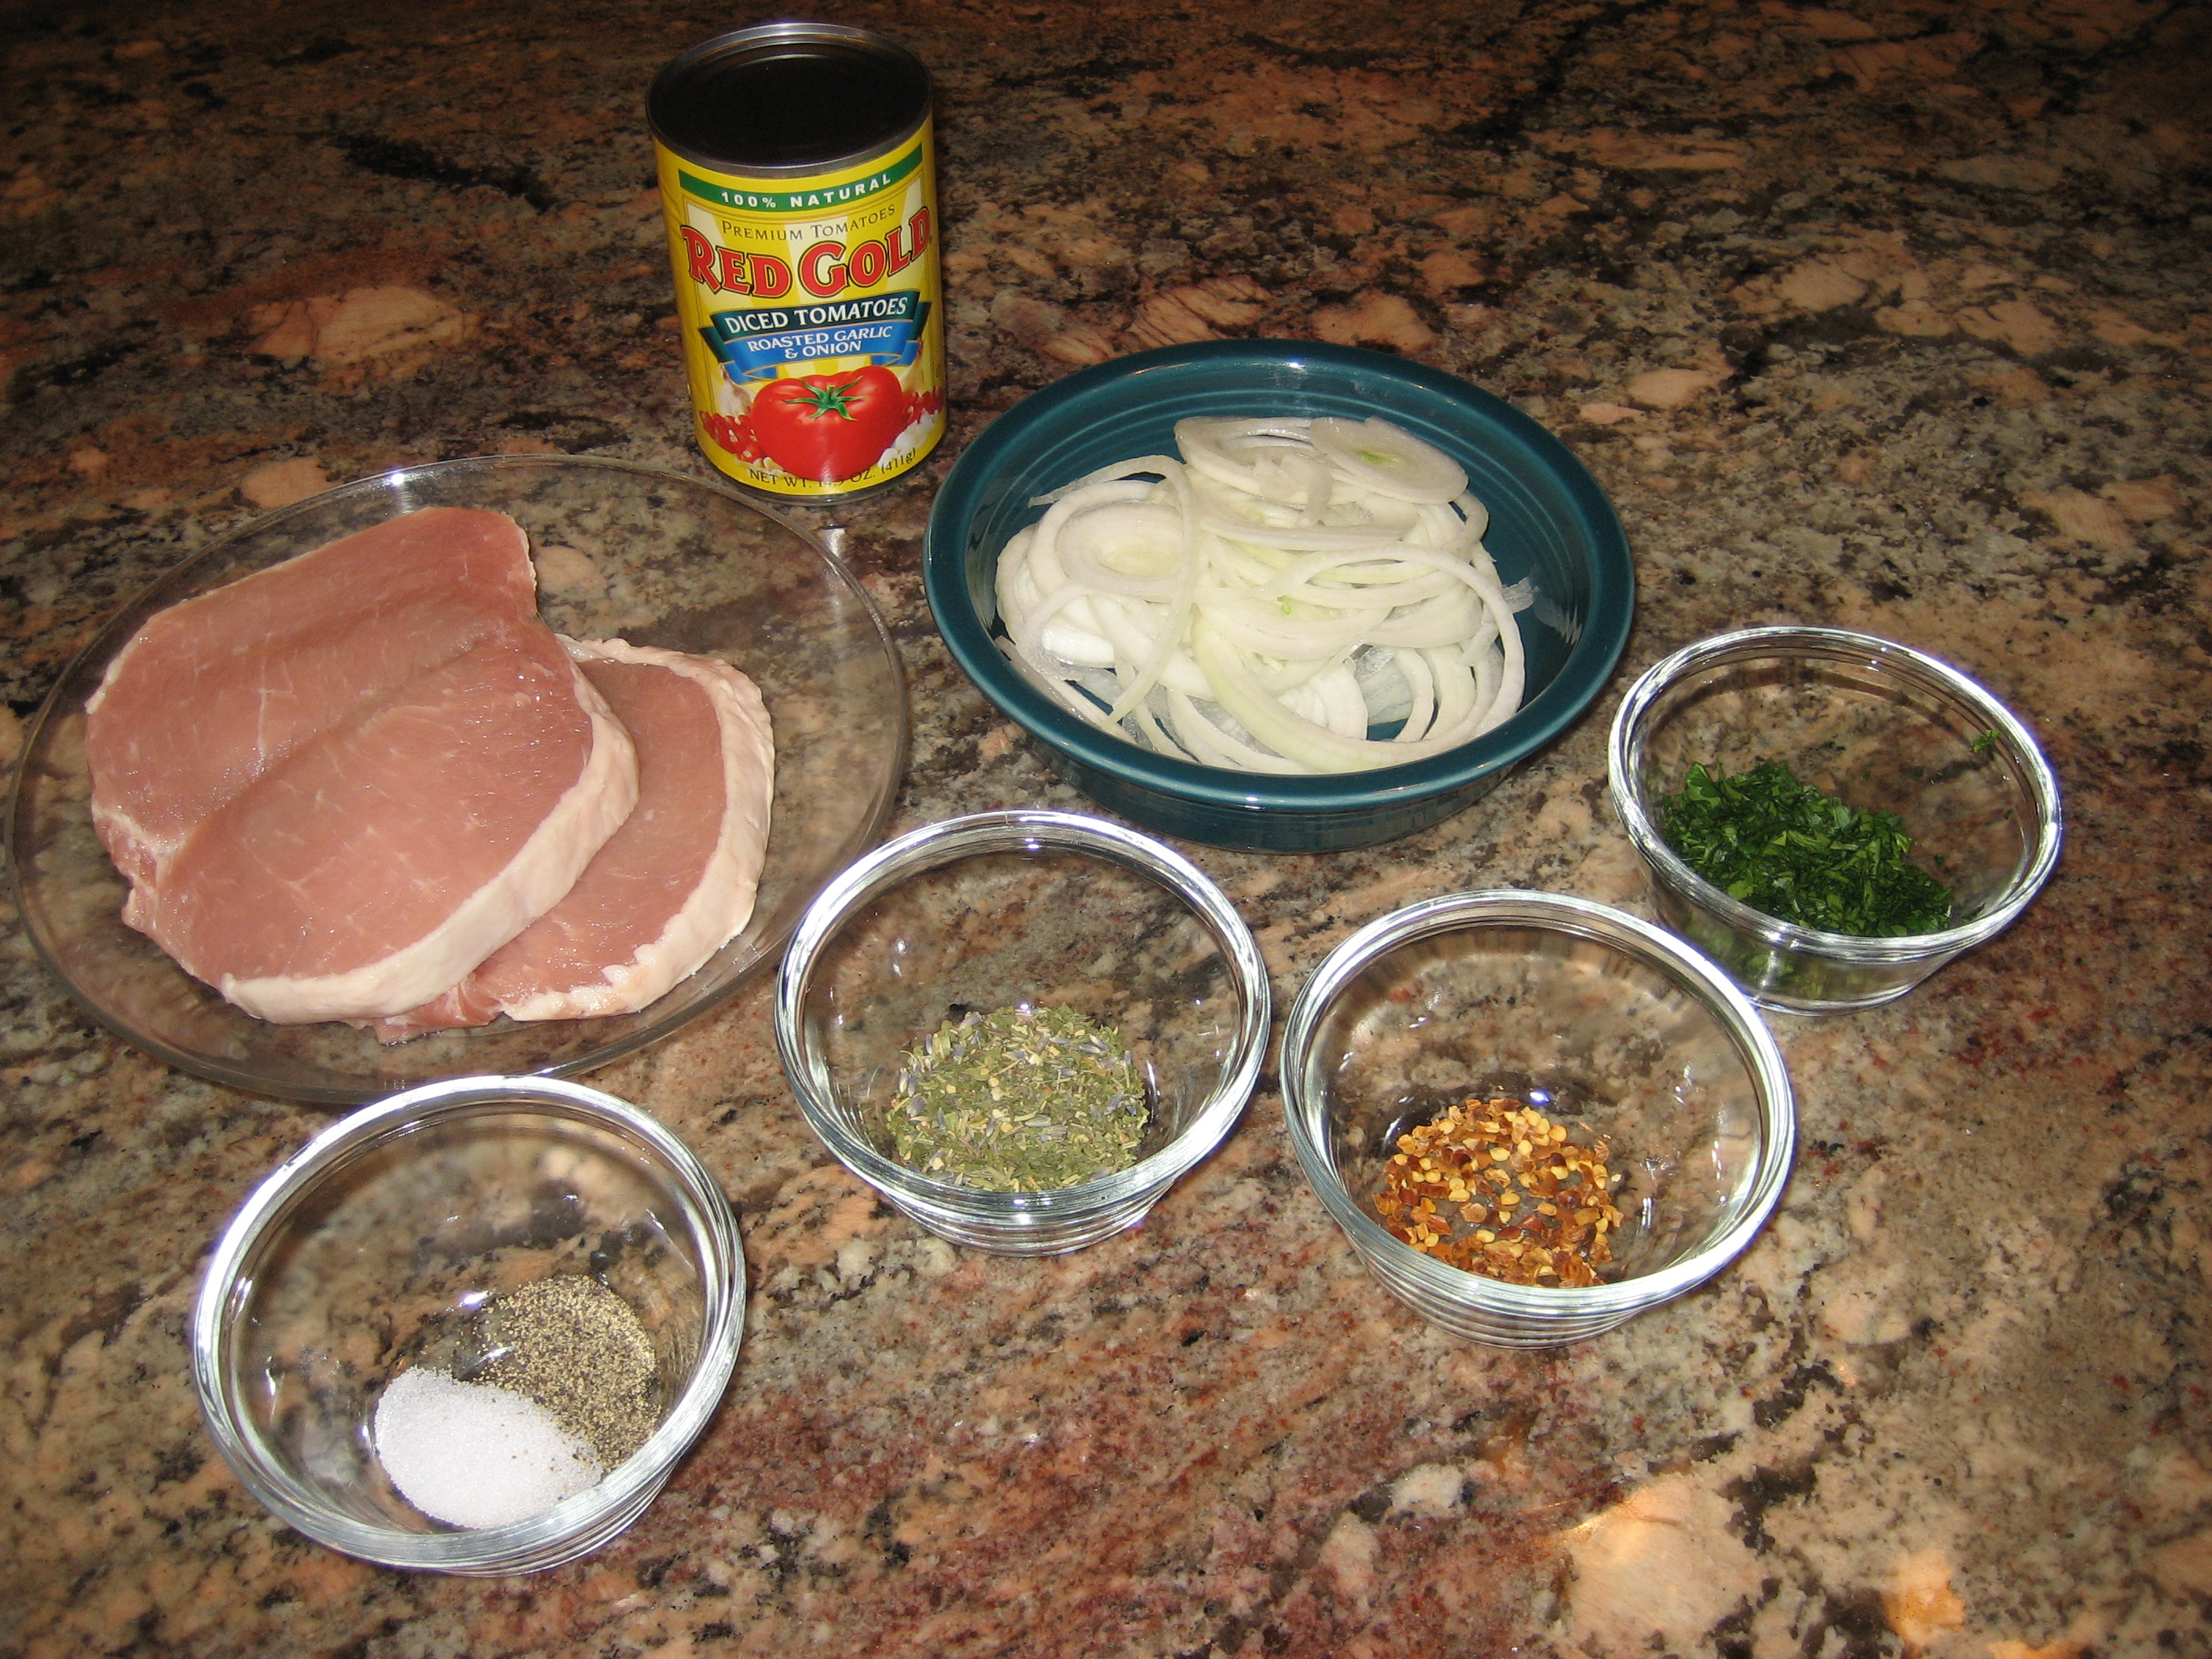 How do you make smothered pork chops?